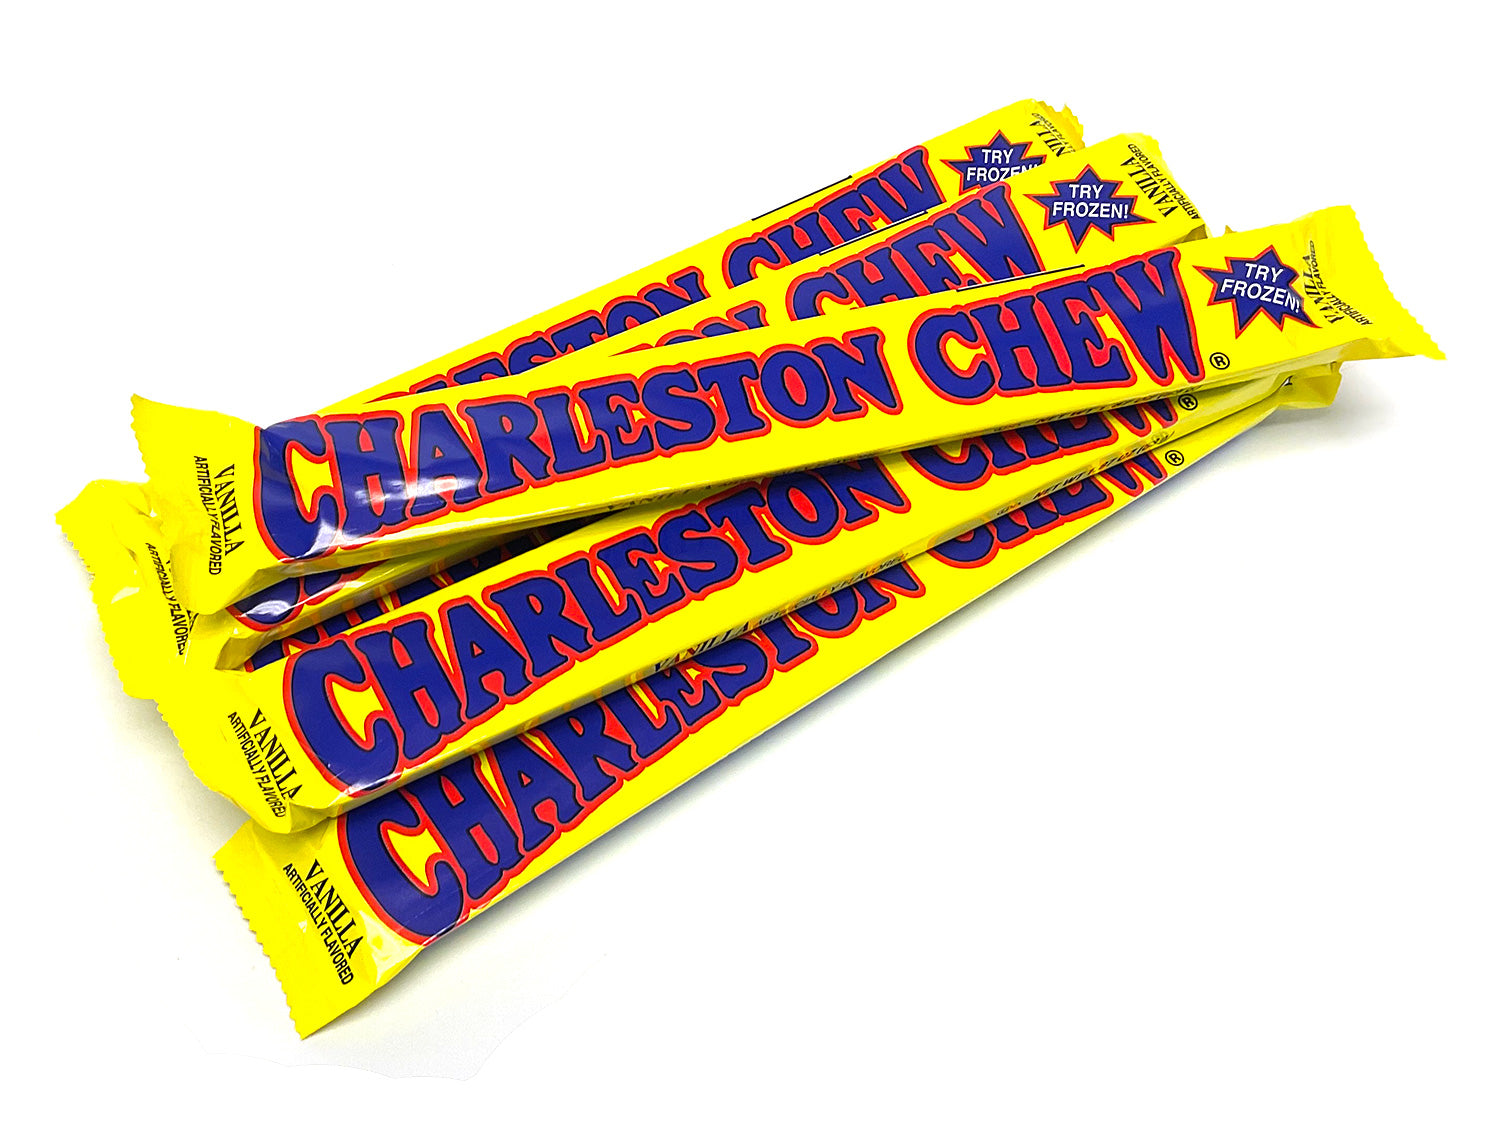 Charleston Chews - vanilla - 1.875 oz bar - 6 bars